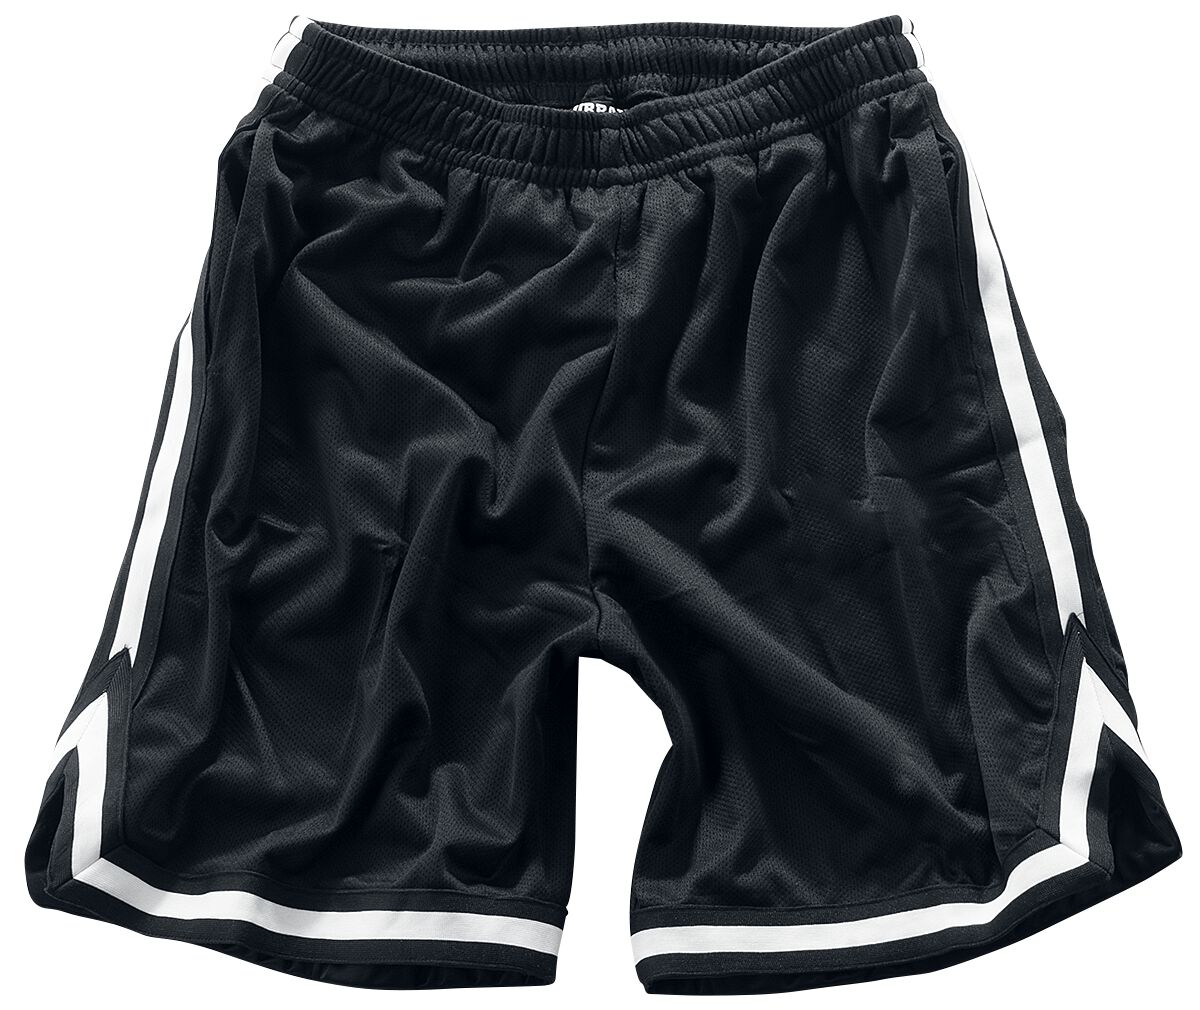 Urban Classics Short - Stripes Mesh Shorts - S bis 3XL - für Männer - Größe XL - schwarz/weiß